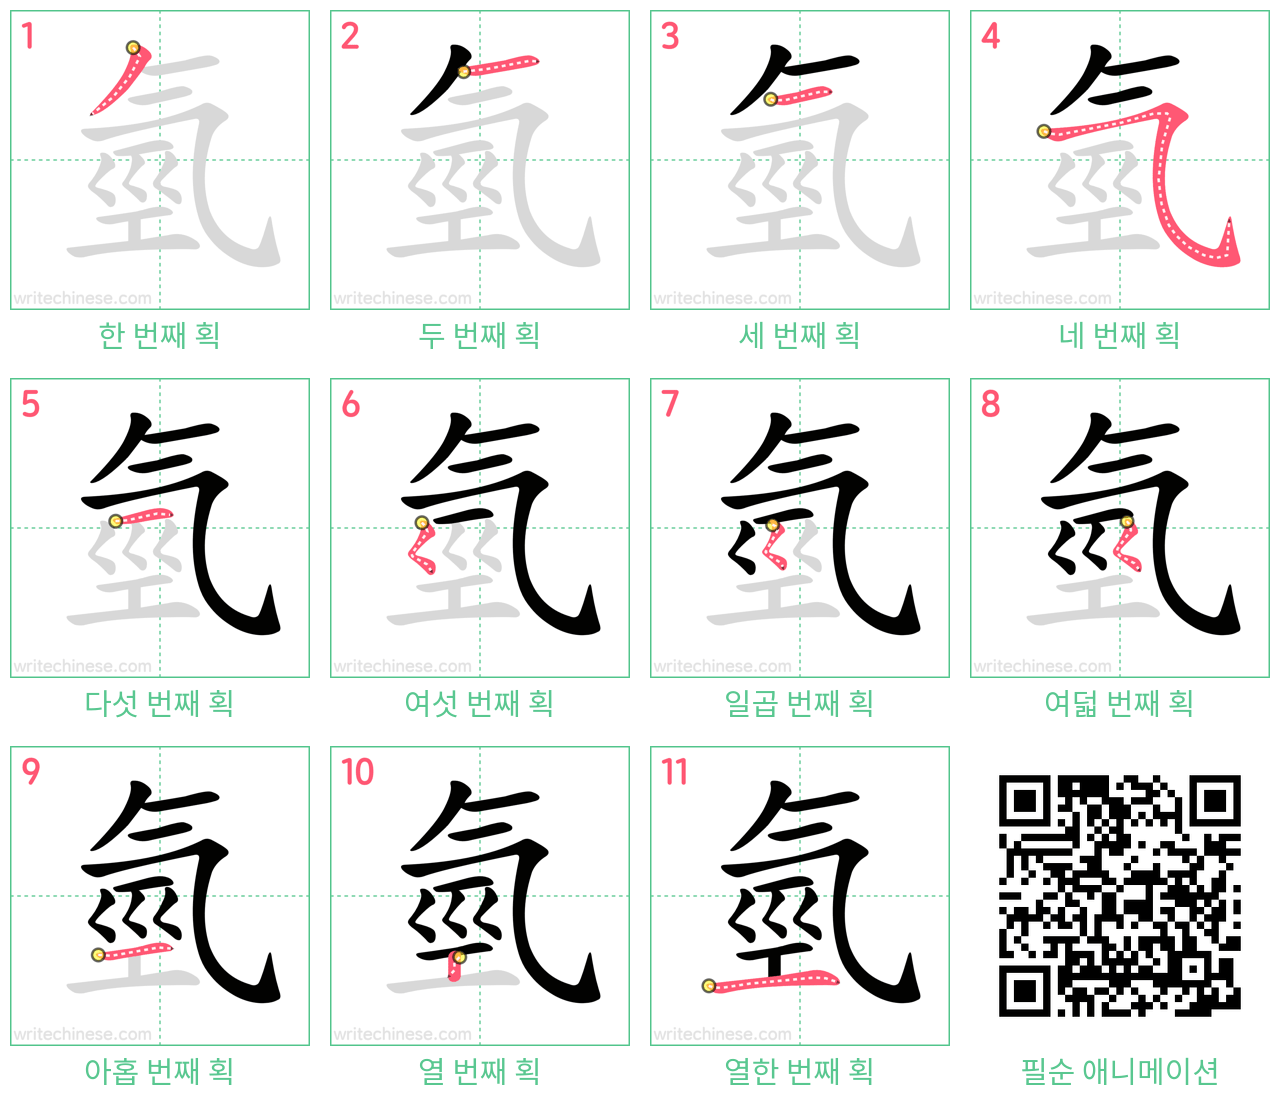 氫 step-by-step stroke order diagrams